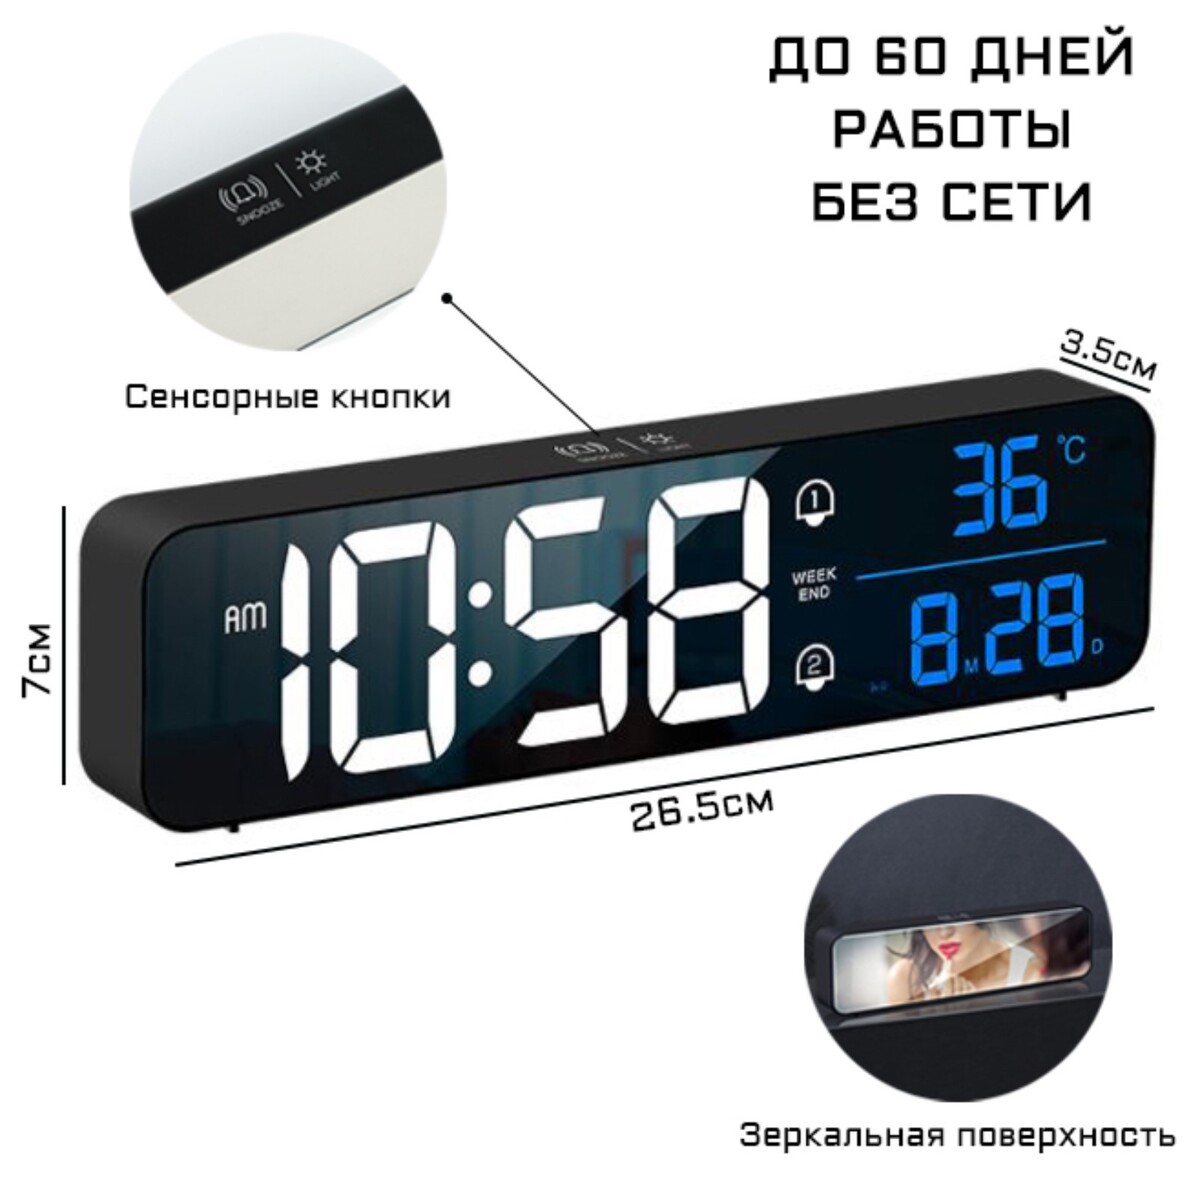 Часы электронные настольные с будильником, с подвесом, 2400 мач, 3.5 х 7 х 26.5 см часы электронные настенные настольные с будильником 36 х 15 х 3 см красные цифры